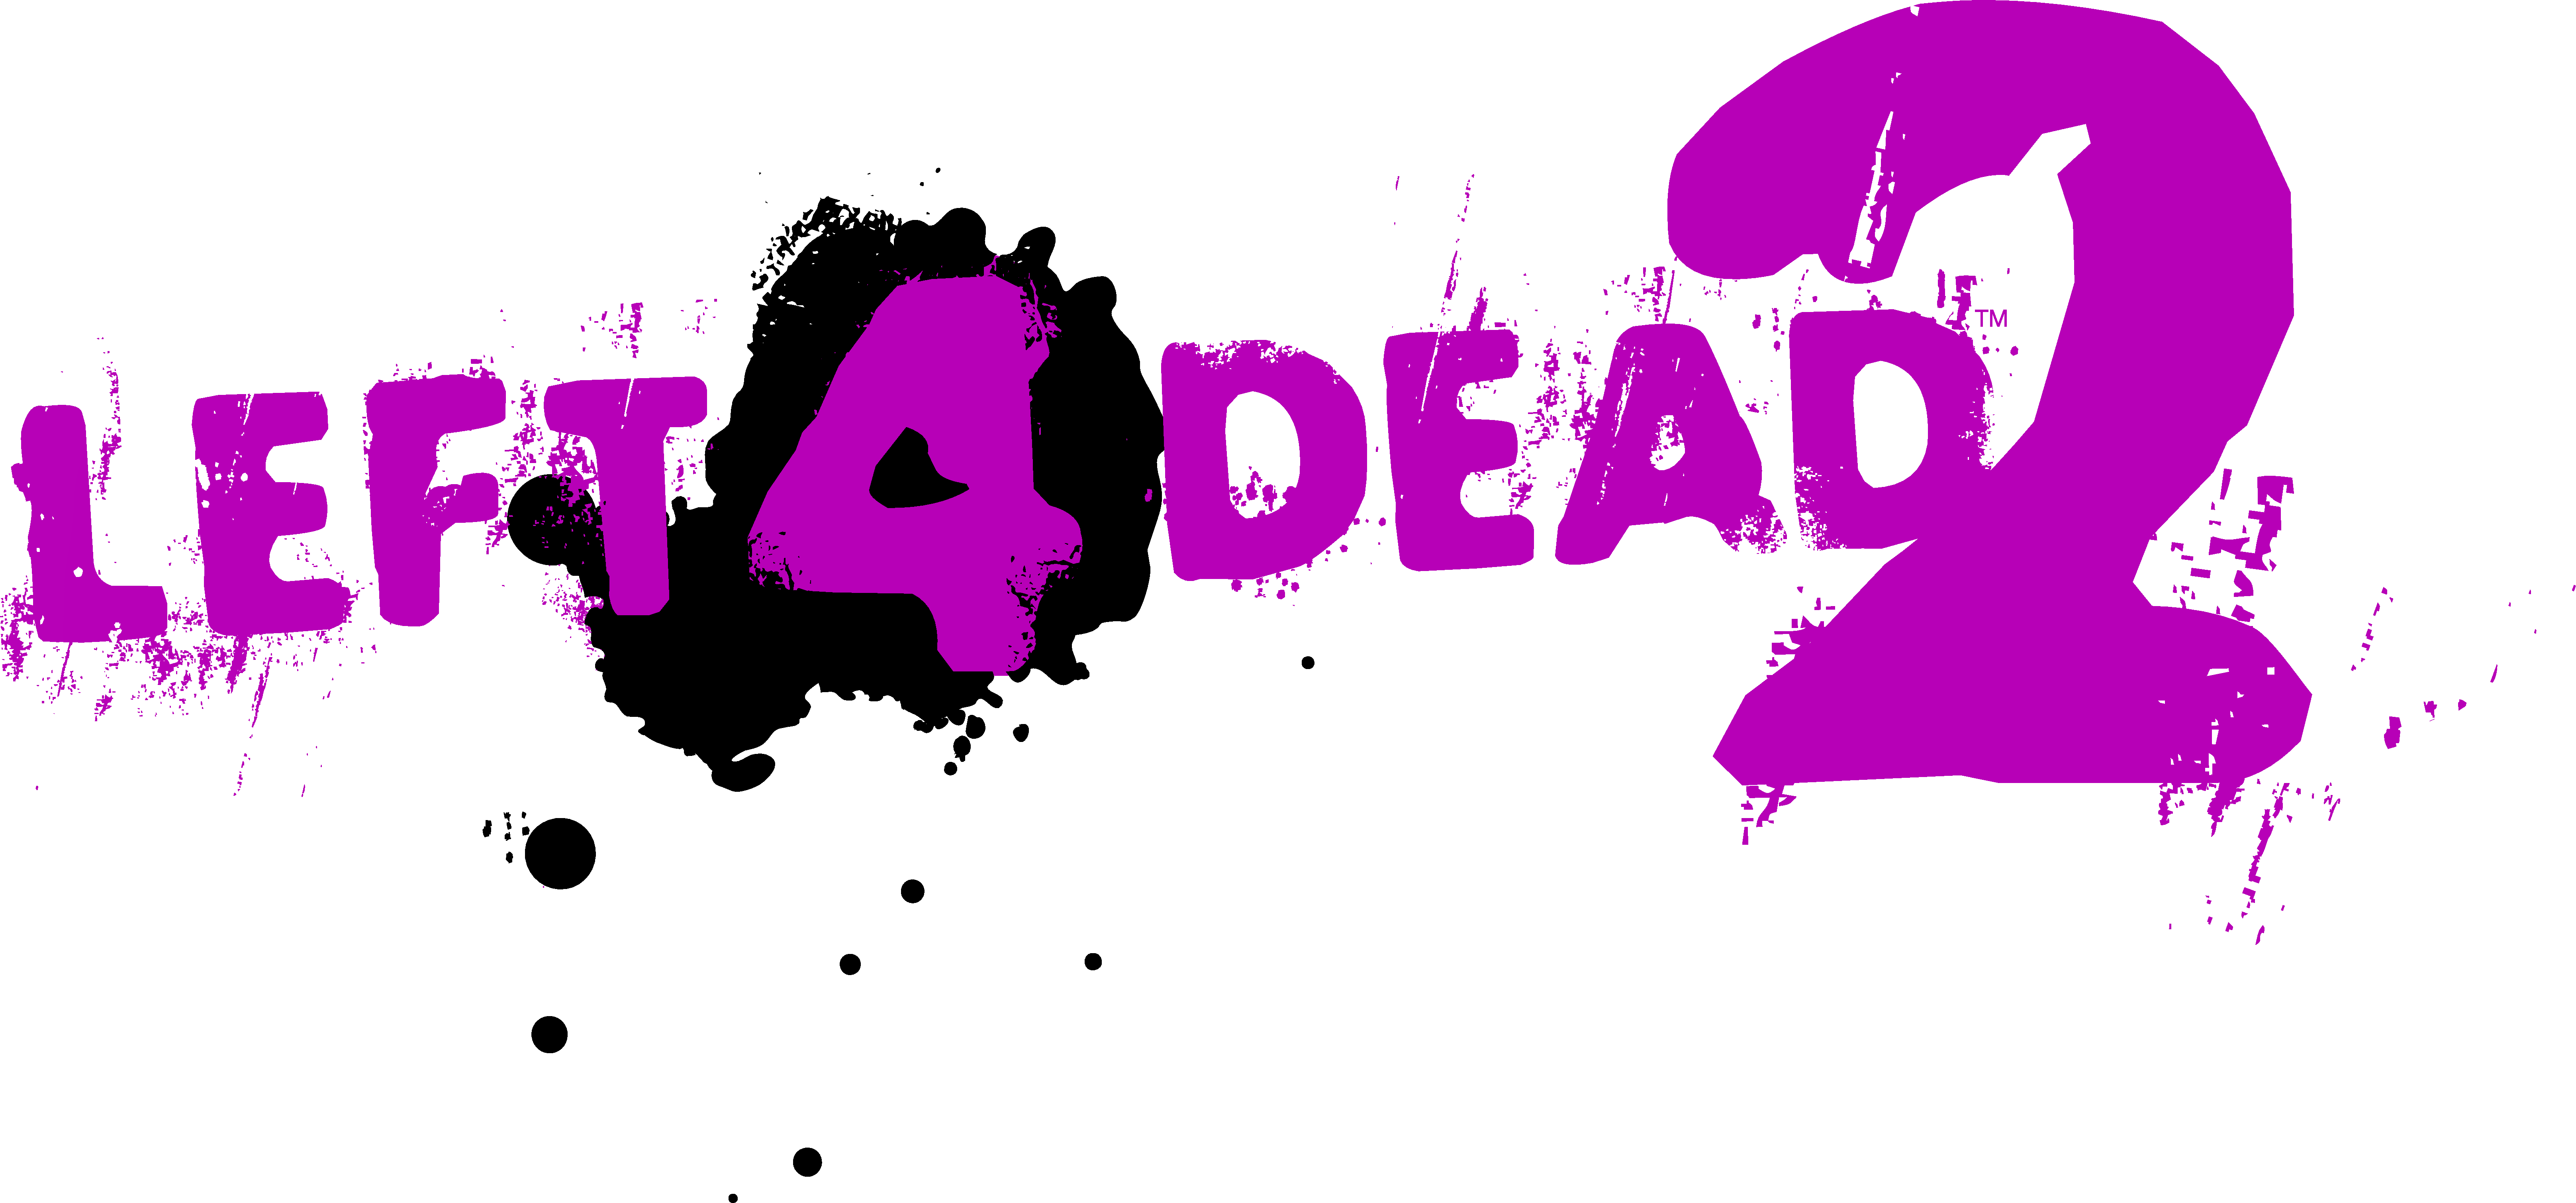 left 4 dead 3 logo